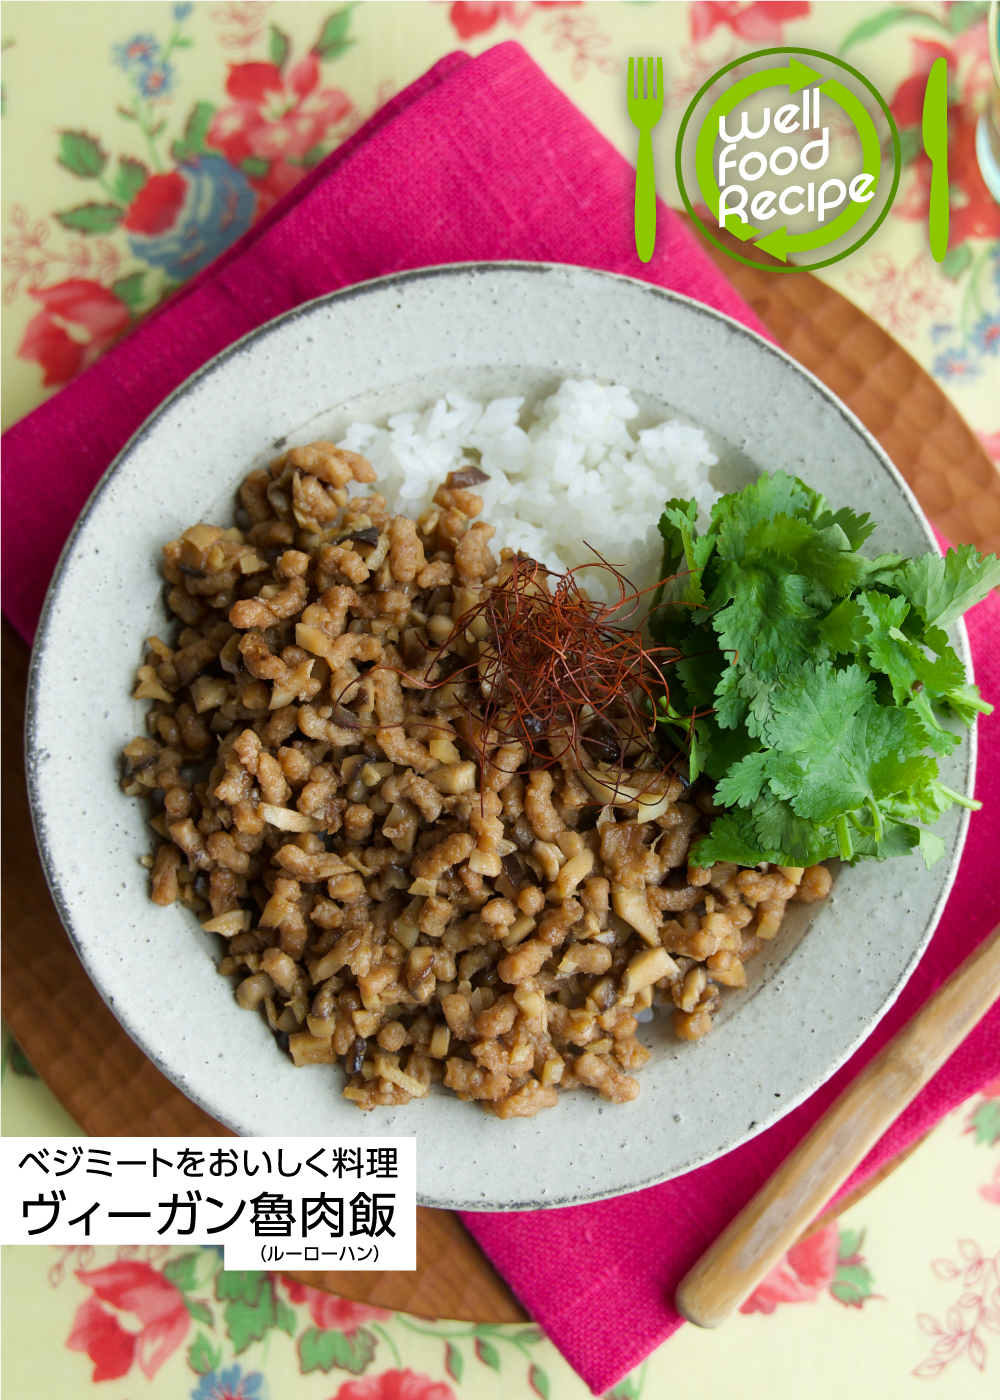 ベジミートをおいしく料理 ヴィーガン魯肉飯（ルーローハン）by渡部和泉